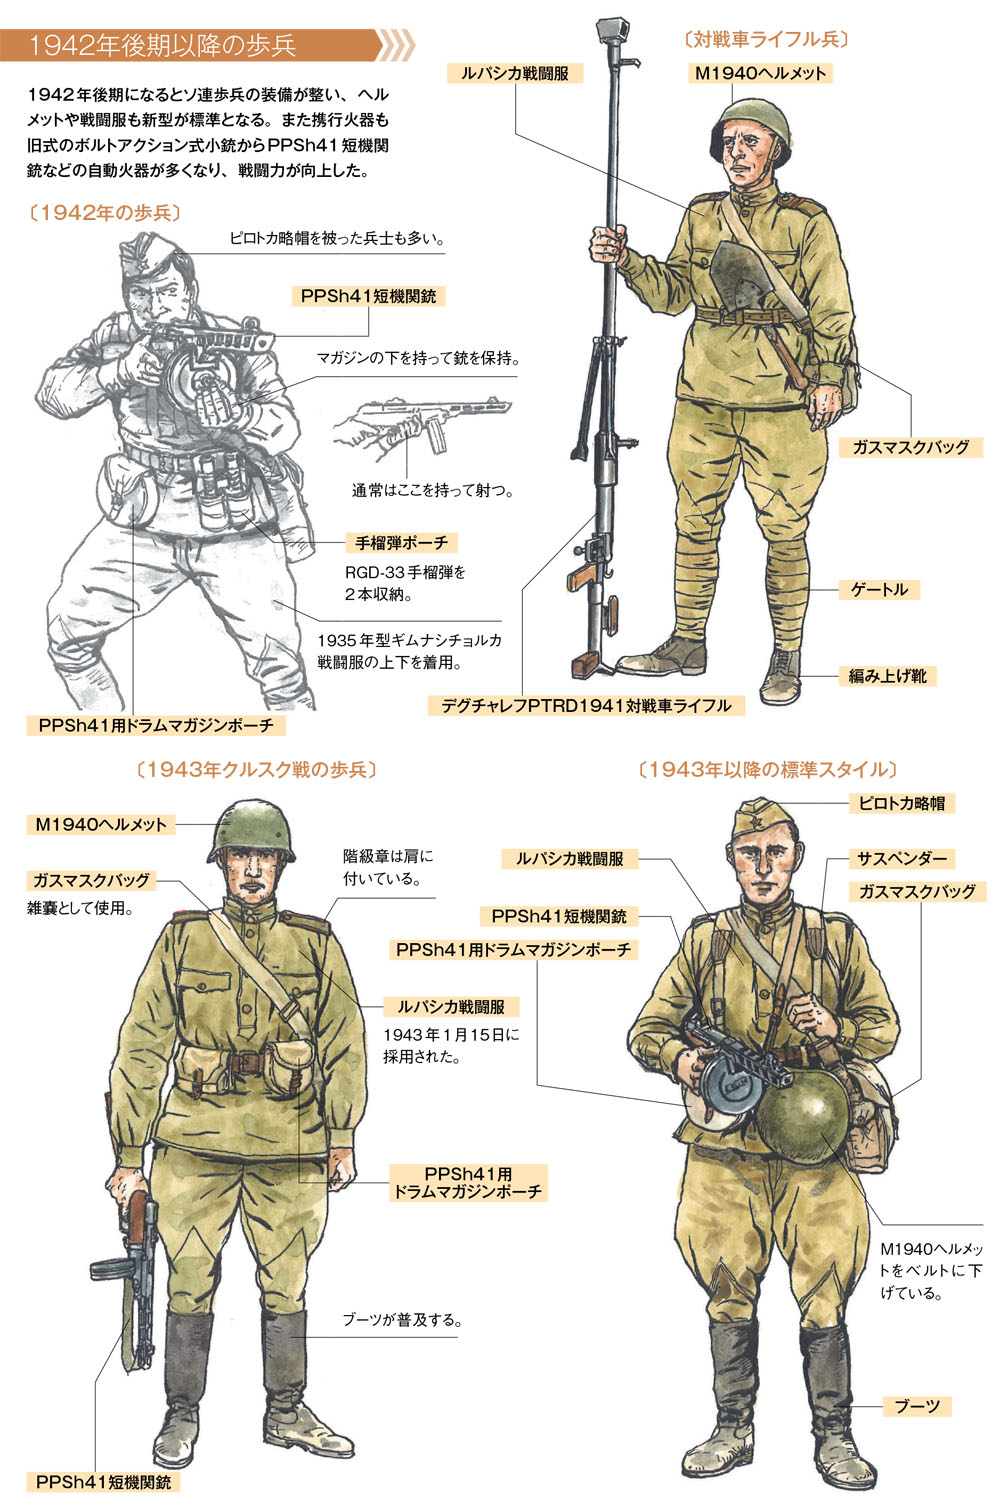 時期による装備の違いに気をつける 作画のための第二次大戦軍服 軍装資料 第4回 Pictures